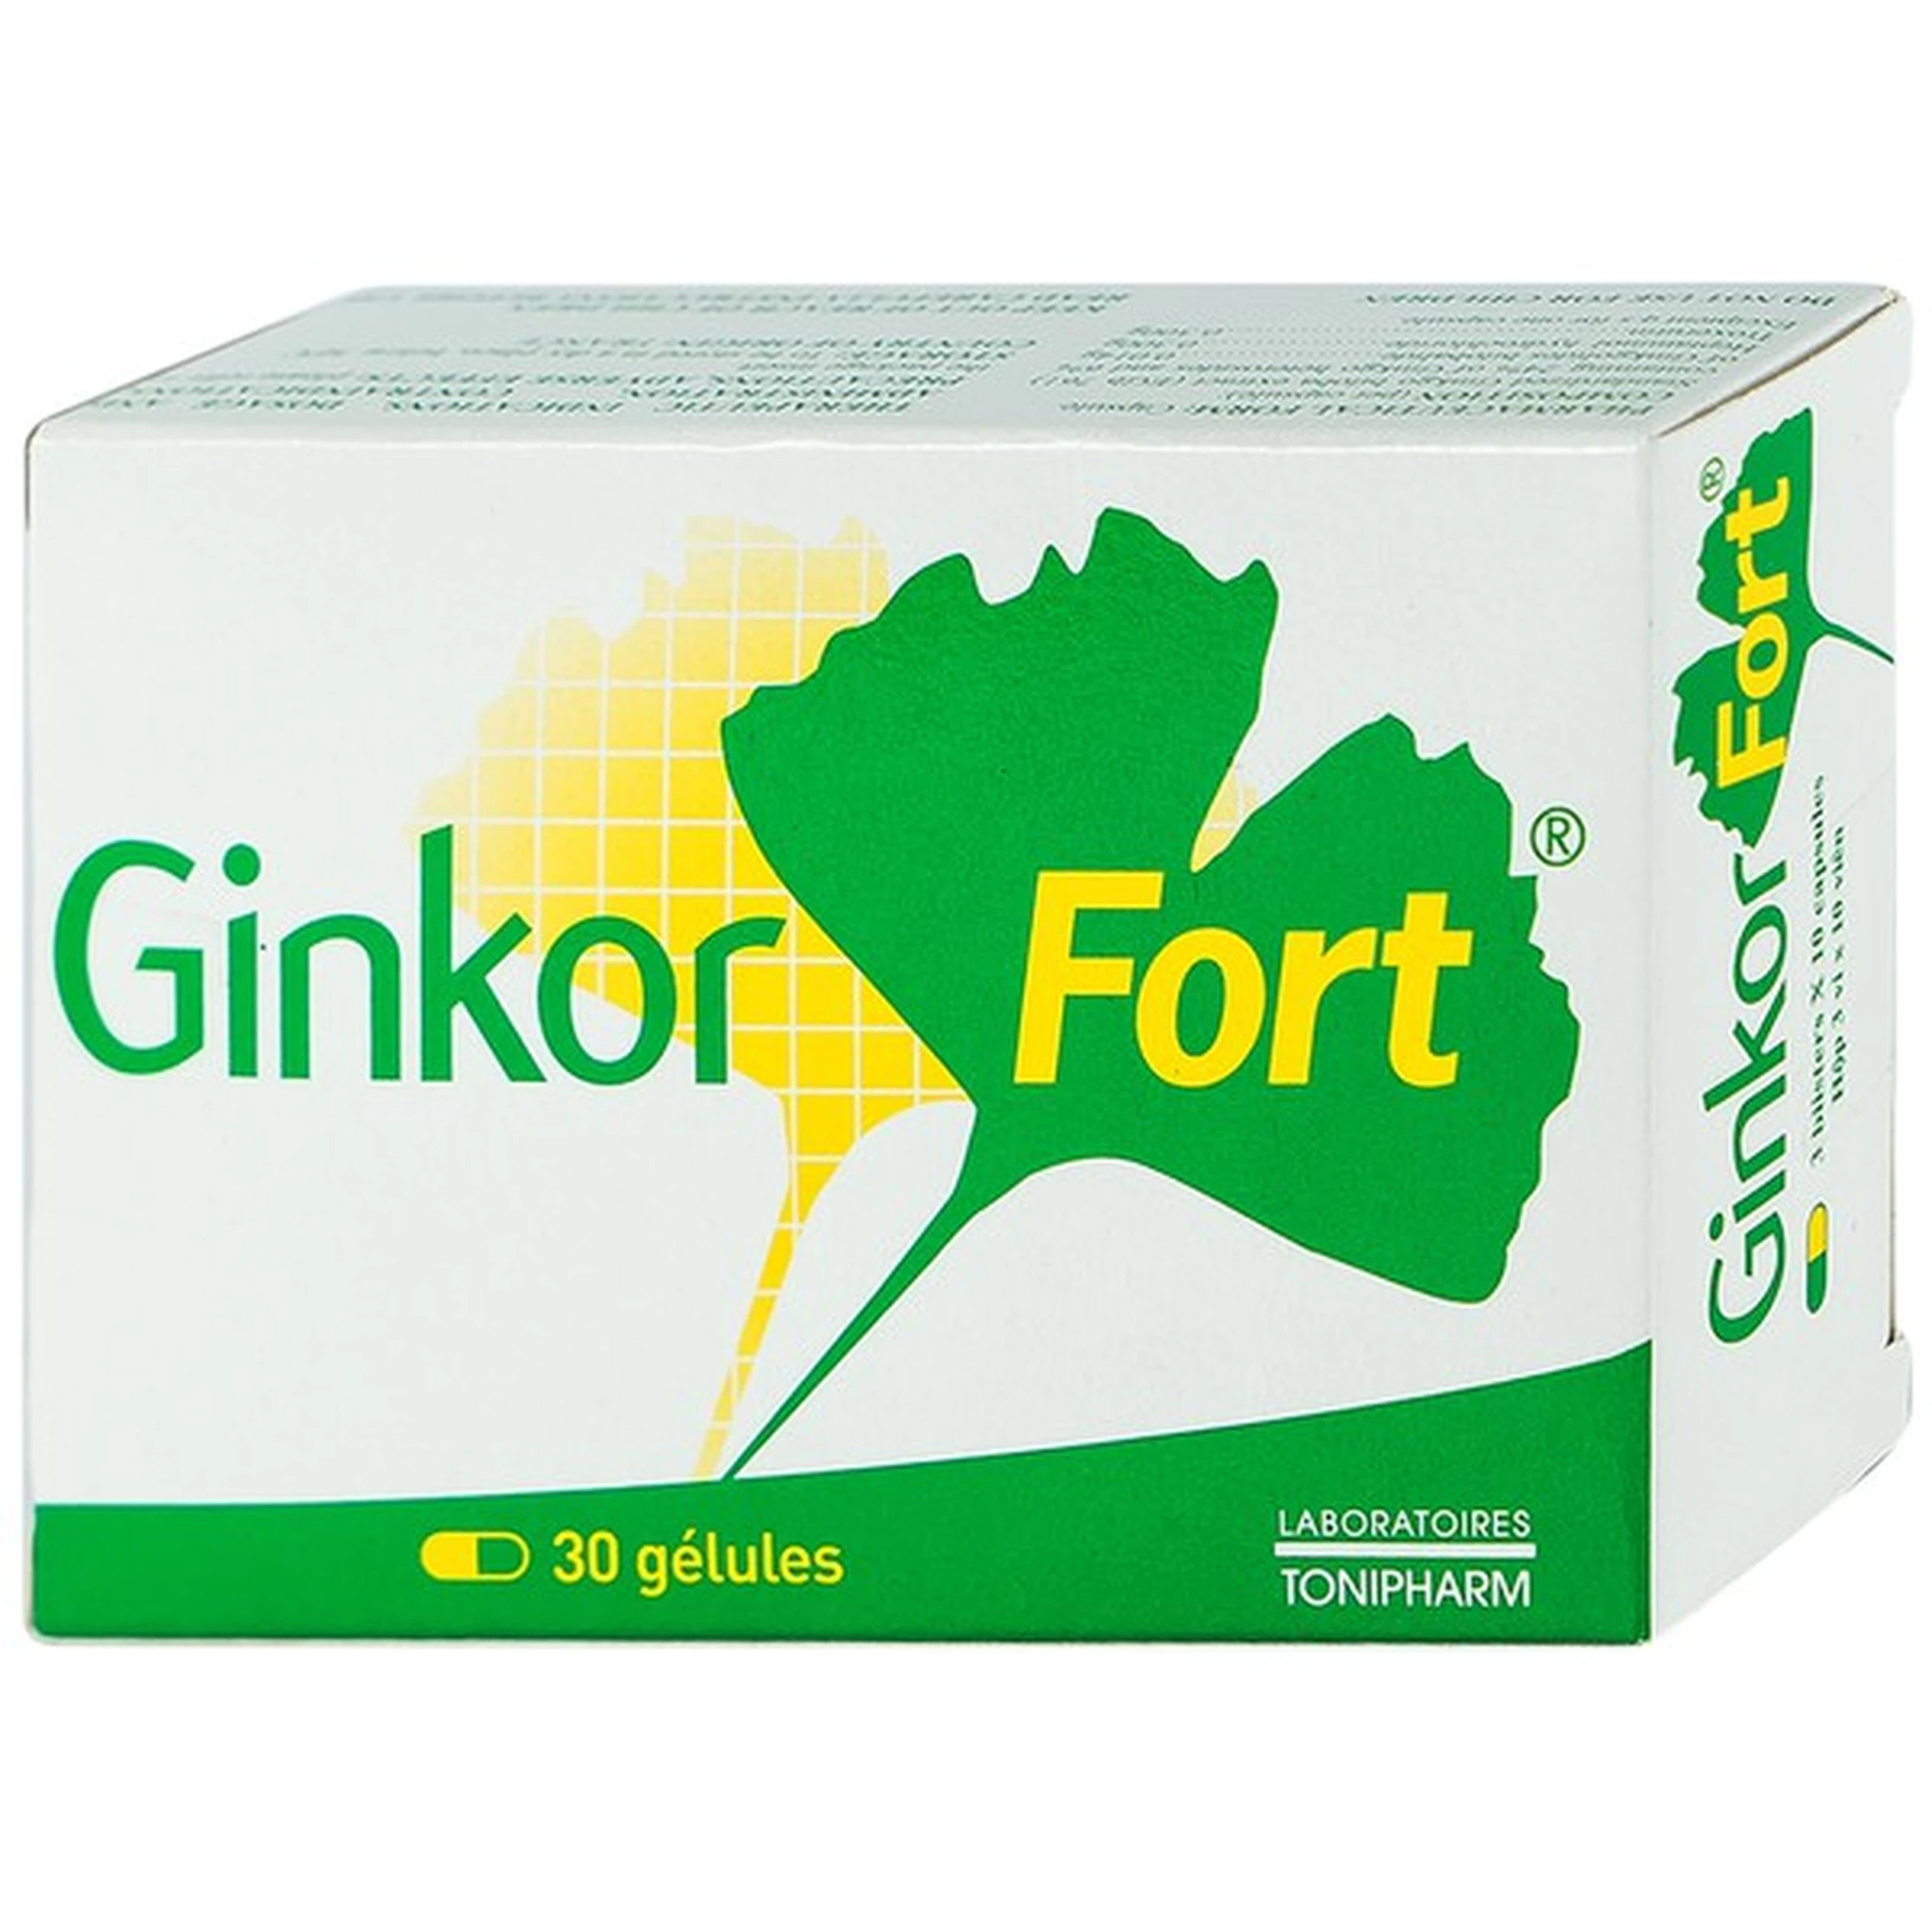 Thuốc Ginkor Fort điều trị suy tĩnh mạch bạch huyết (3 vỉ x 10 viên)